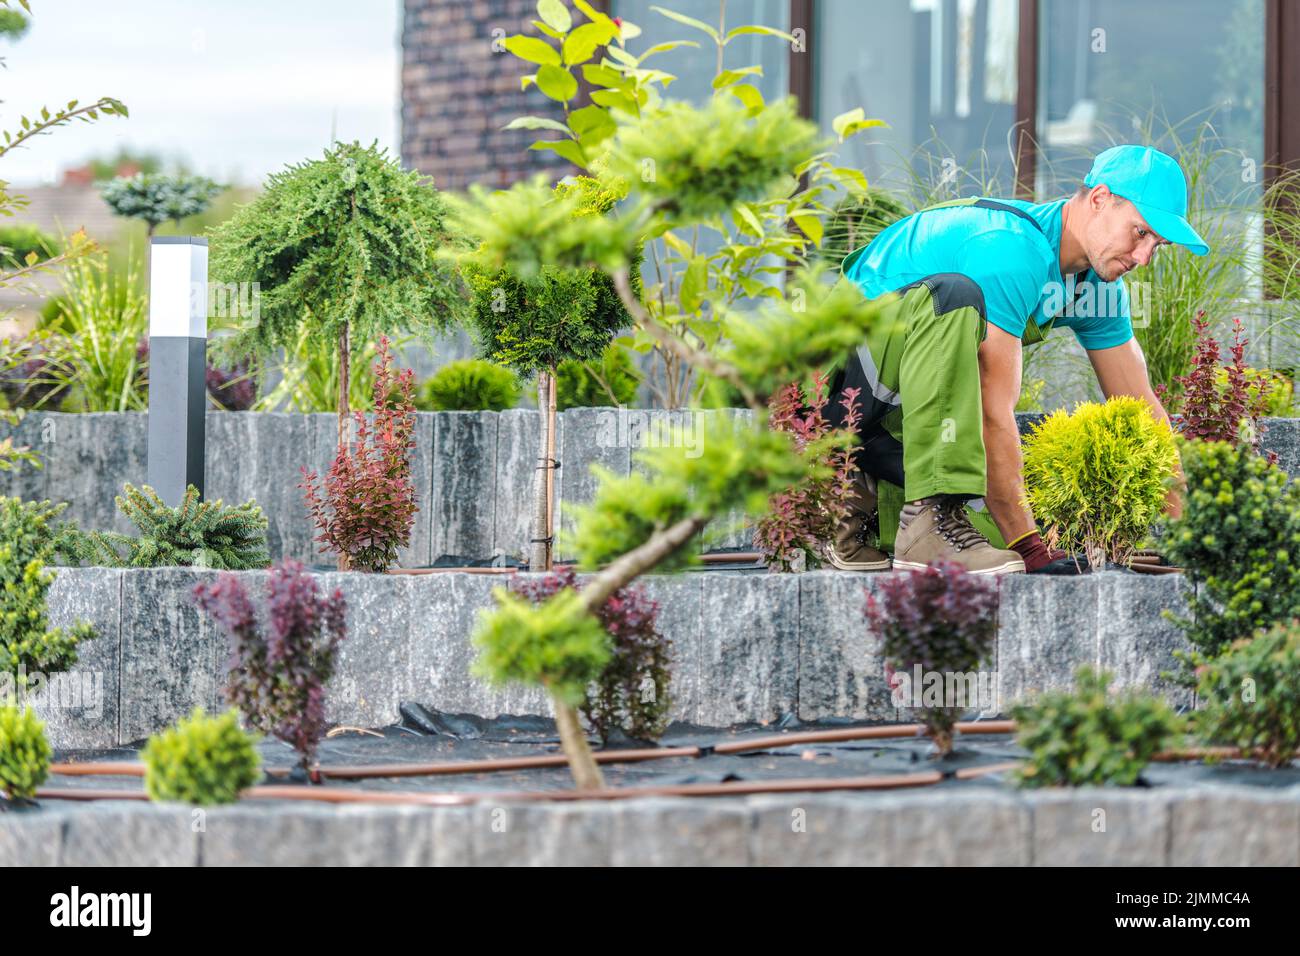 Kaukasischer Gärtner in Blauer Mütze und Hemd, der den neu geschaffenen Front Yard Garden arrangiert, indem er verschiedene Pflanzen in den Boden pflanzt, der mit Weed-Membran bedeckt ist. Stockfoto